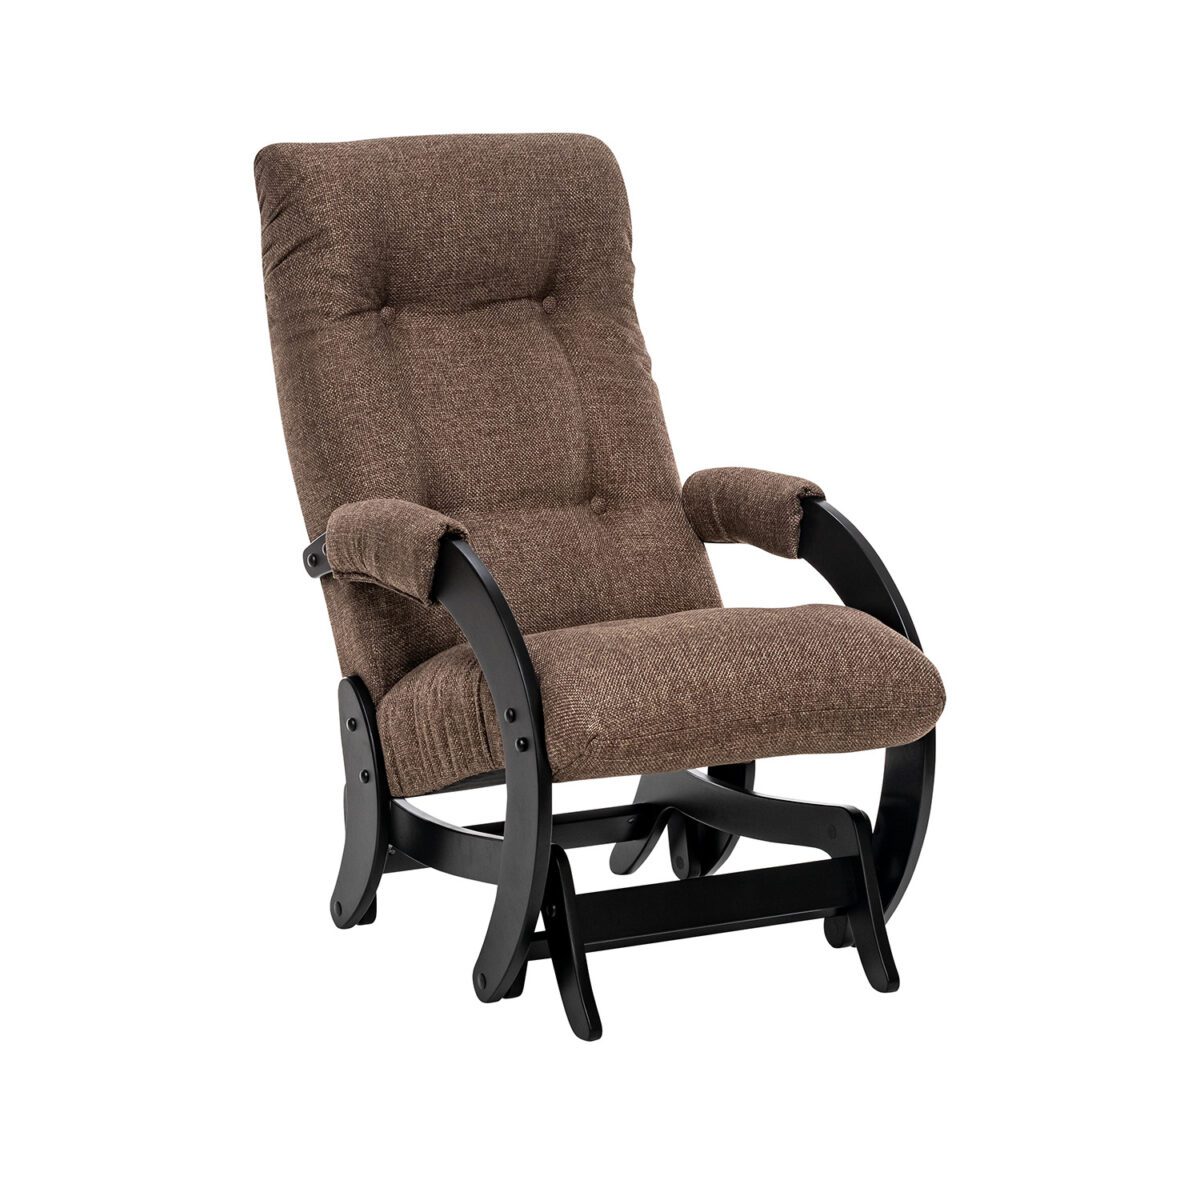 Кресло-качалка Модель 68 (Leset Футура) Венге, ткань Malta 15 A